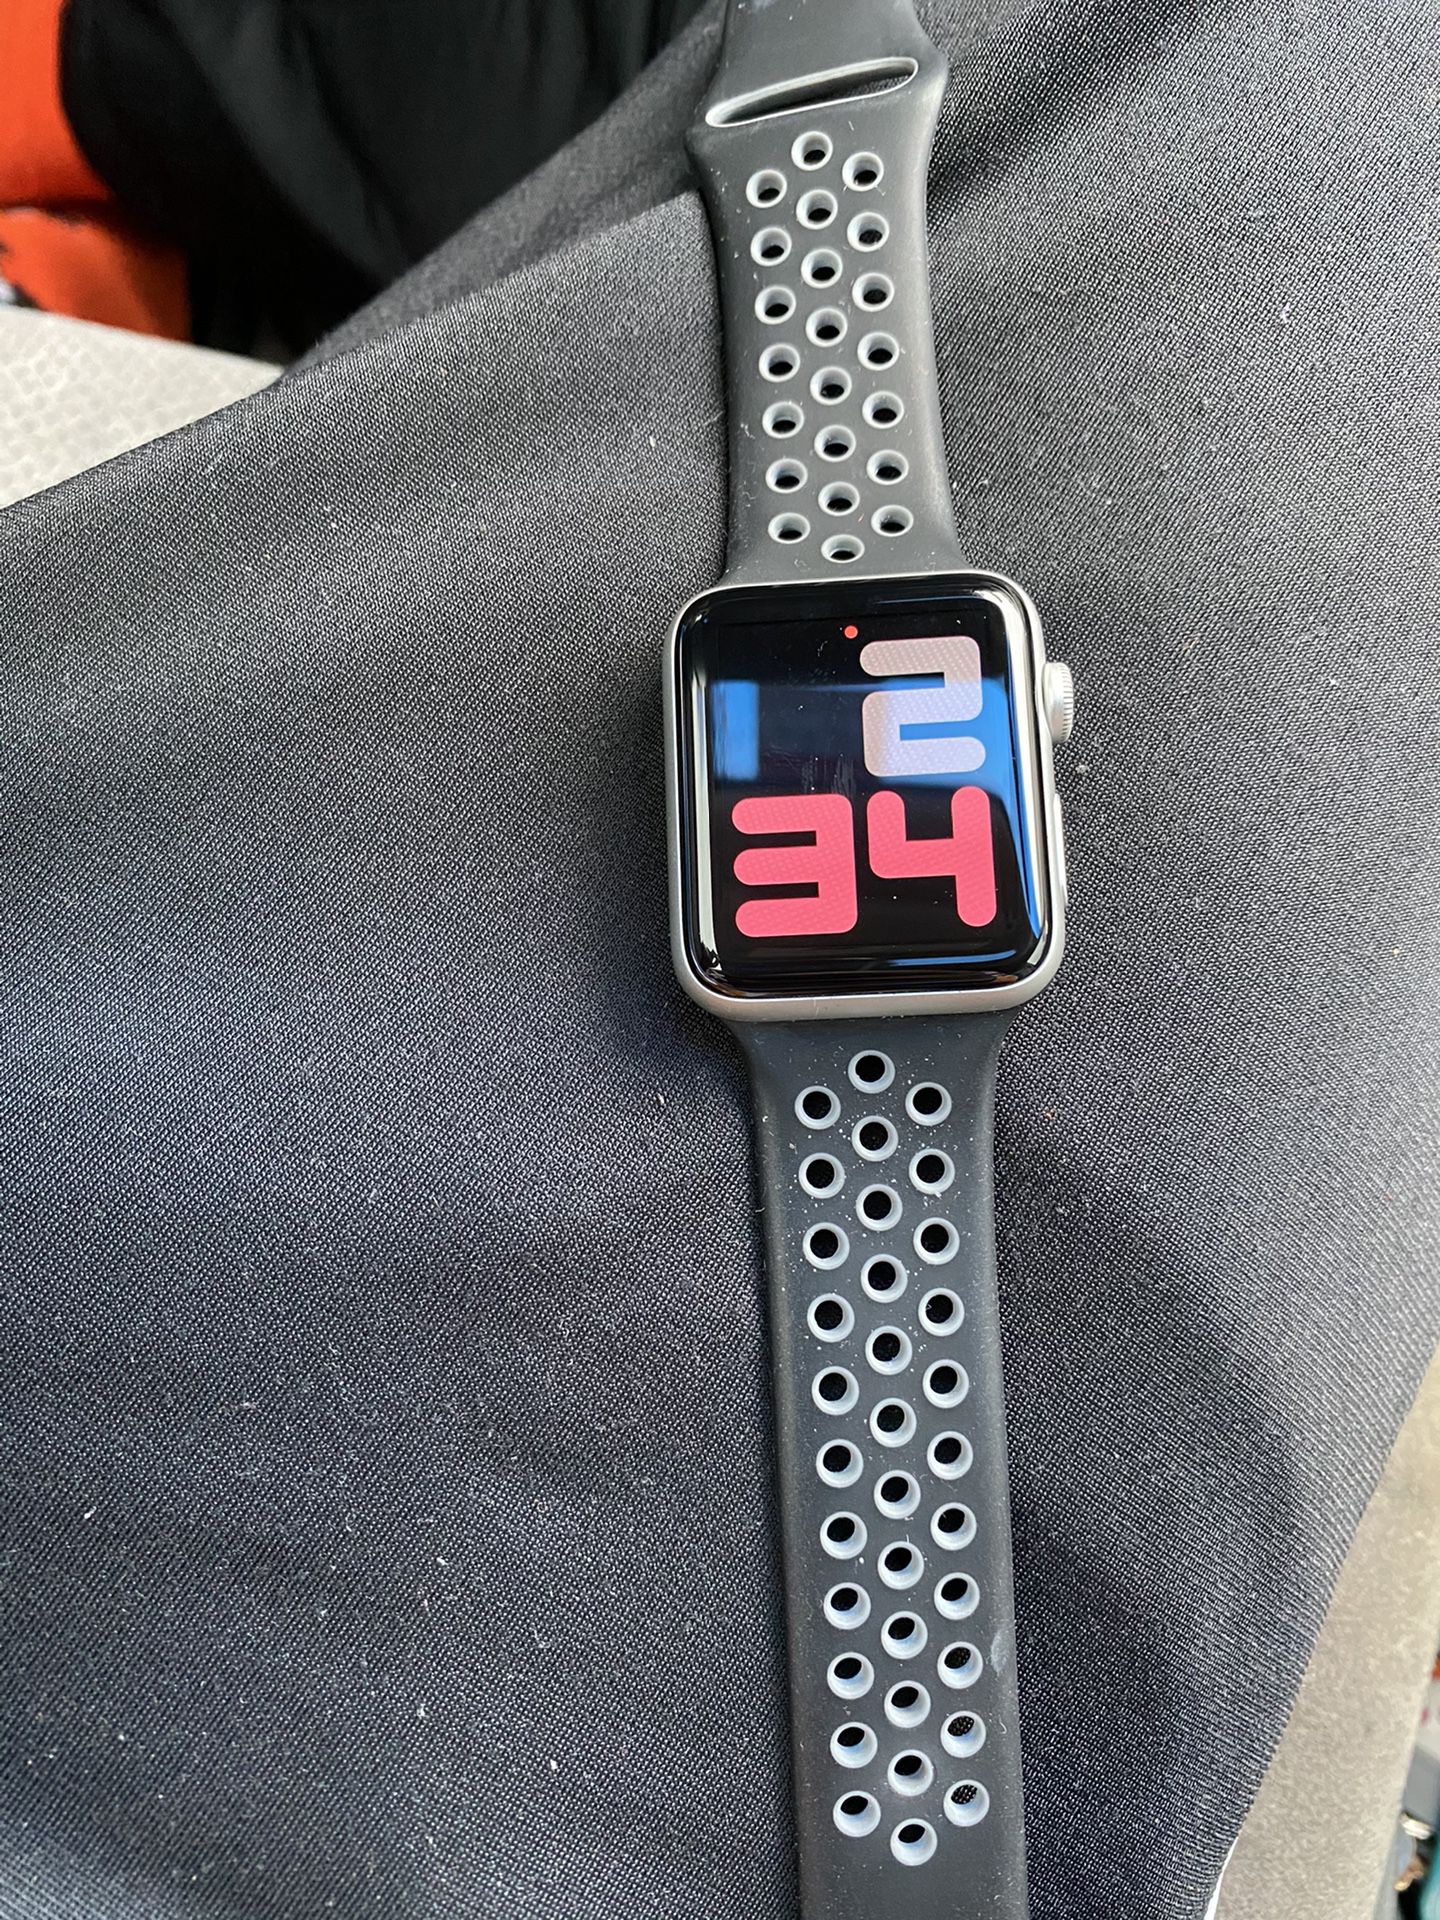 Apple Watch gen 3